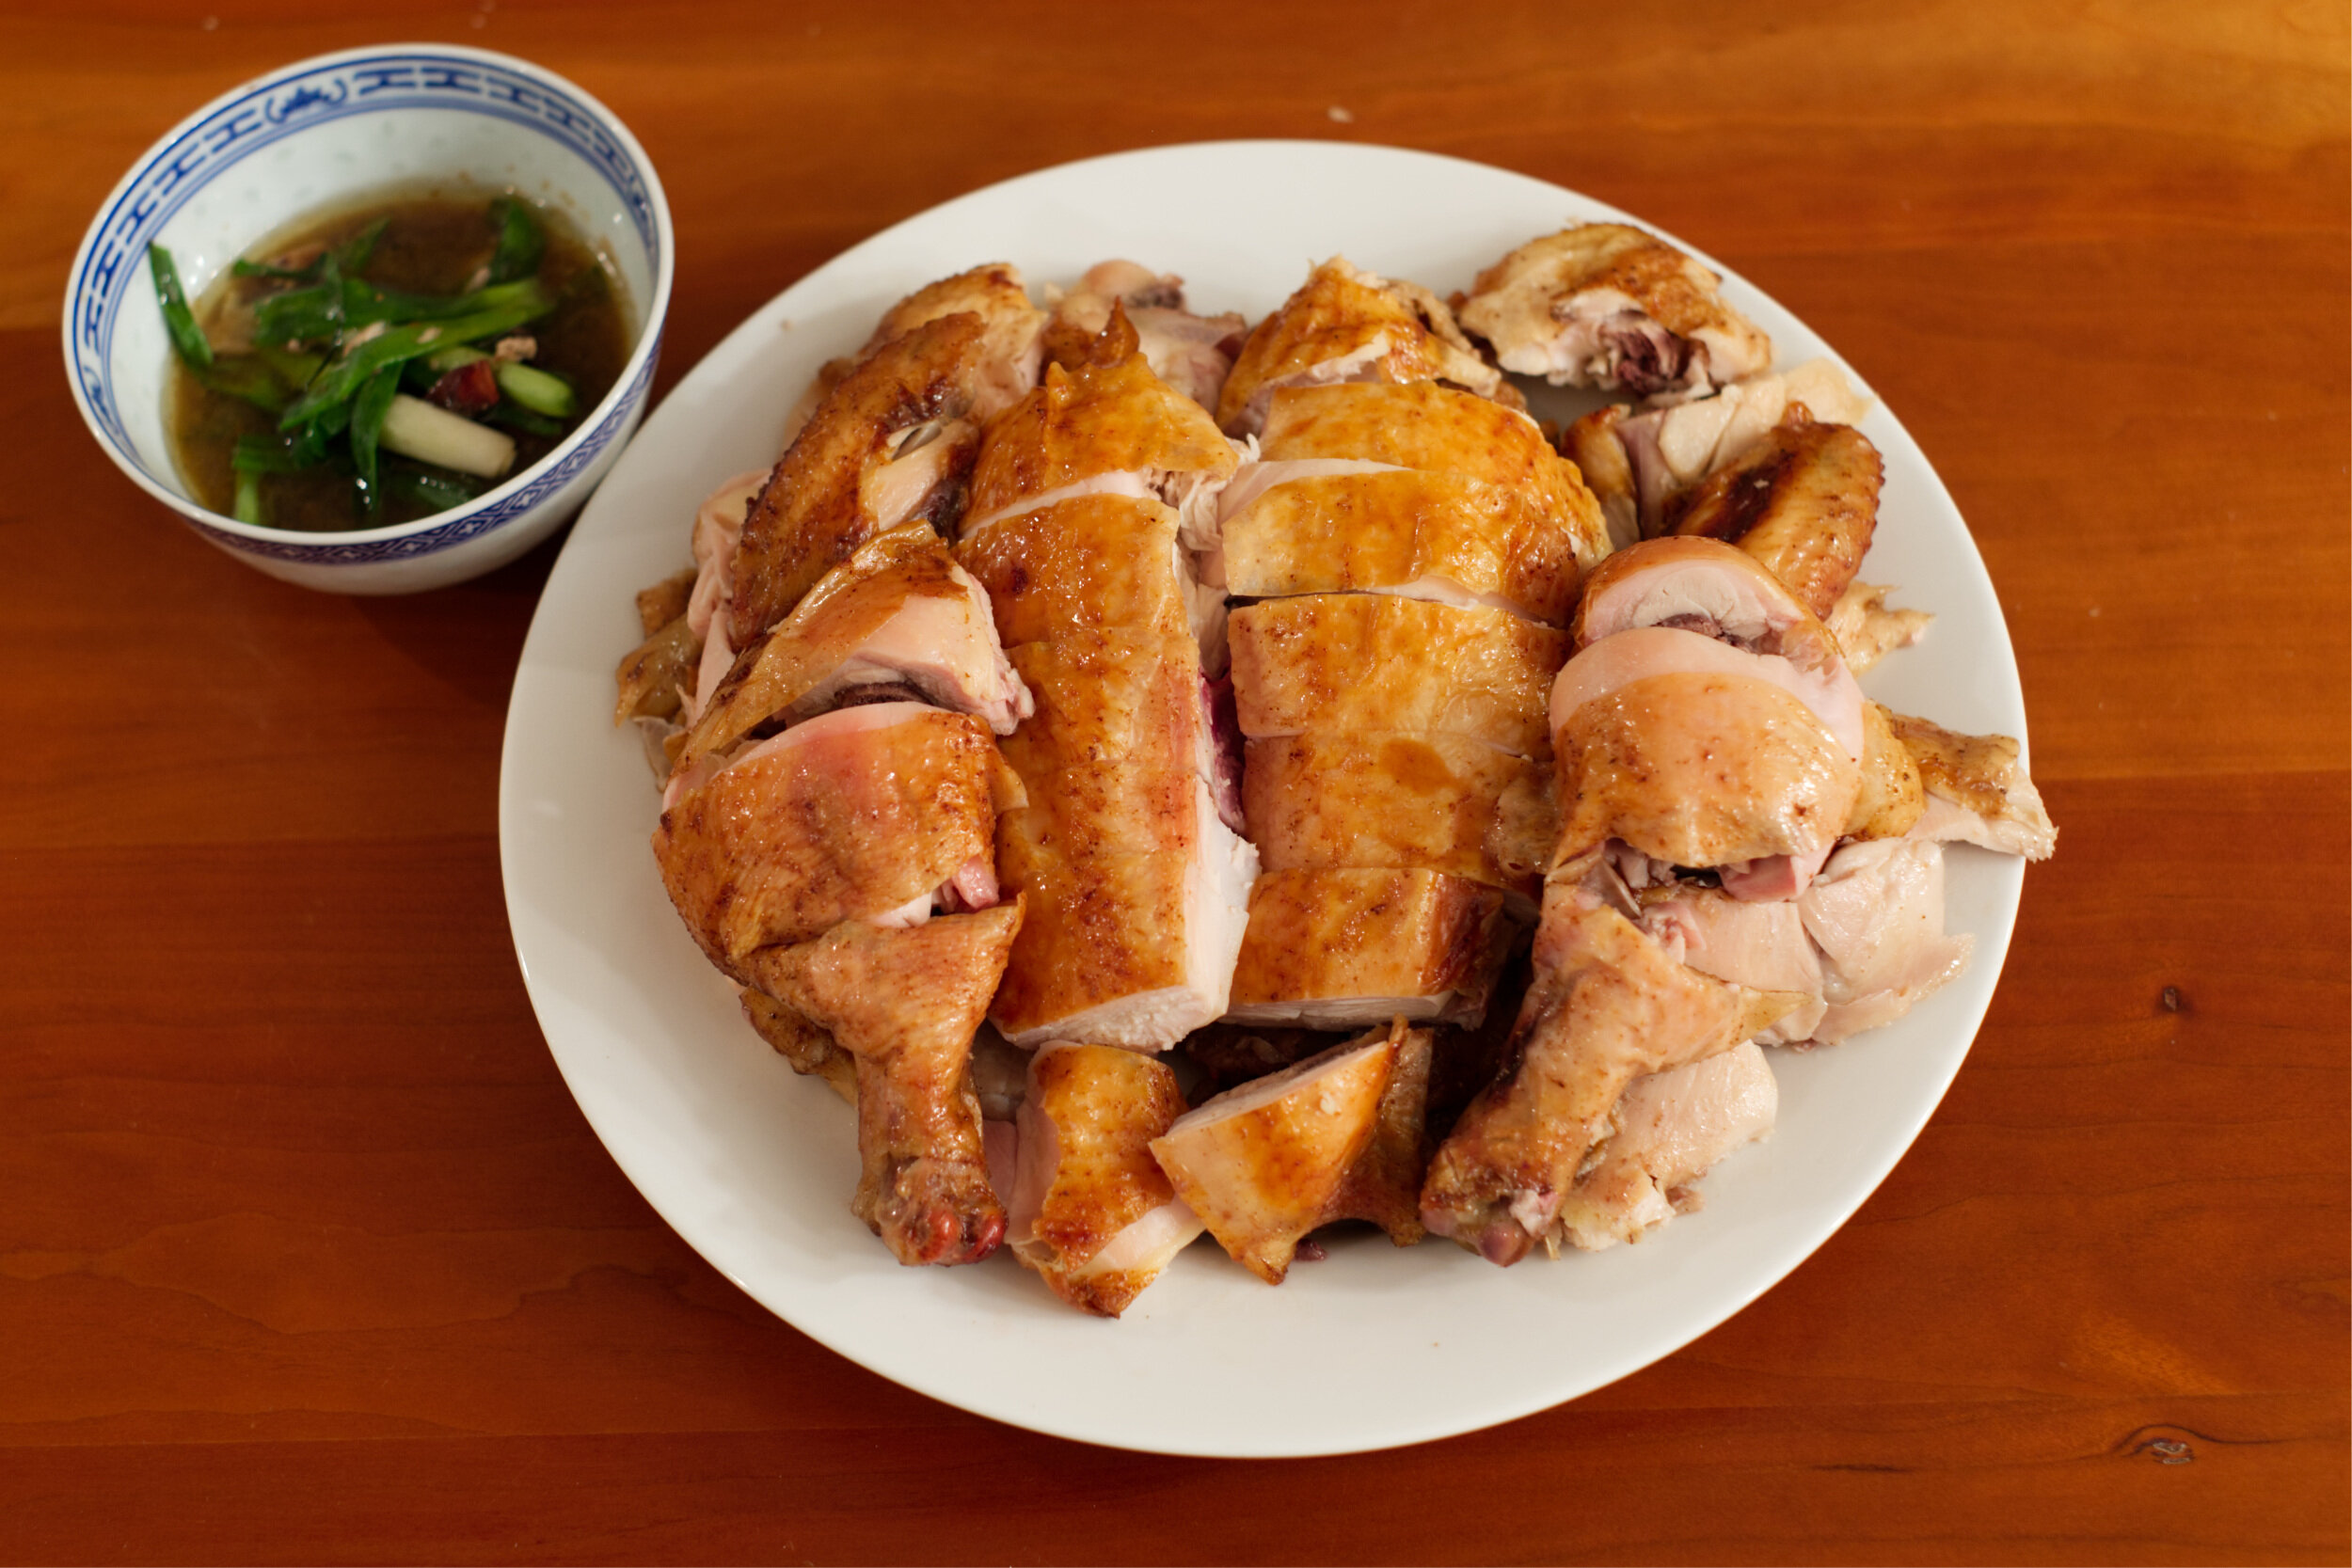 燒雞 siu gai or 焗雞 guk gai cantonese home style roast chicken chinese